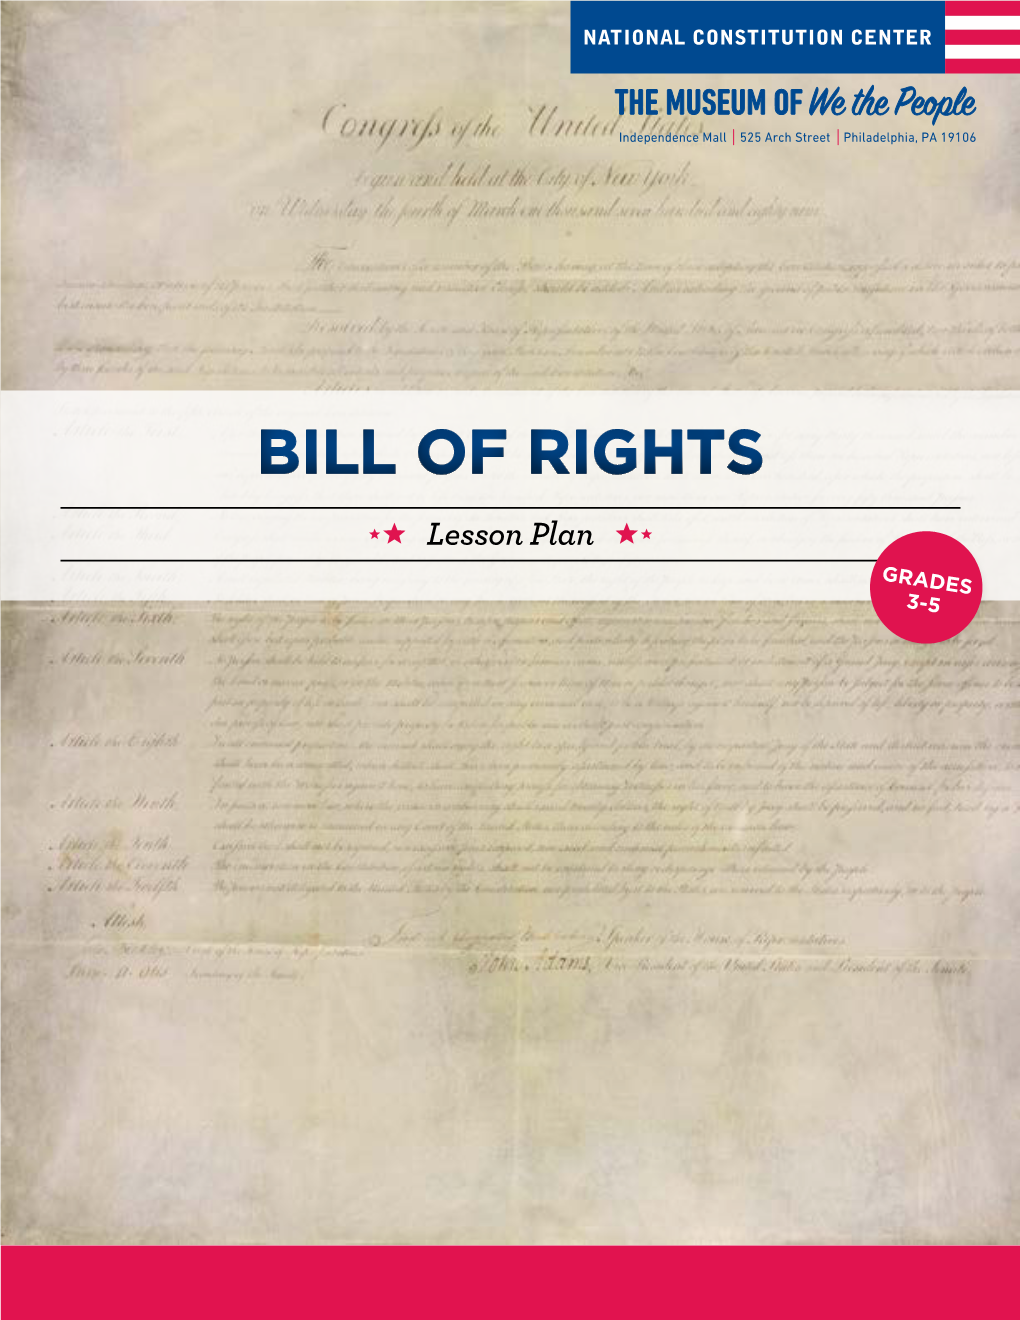 BILL of Rights Lesson Plan GRADES 3-5 GRADES BILL of RIGHTS 3-5